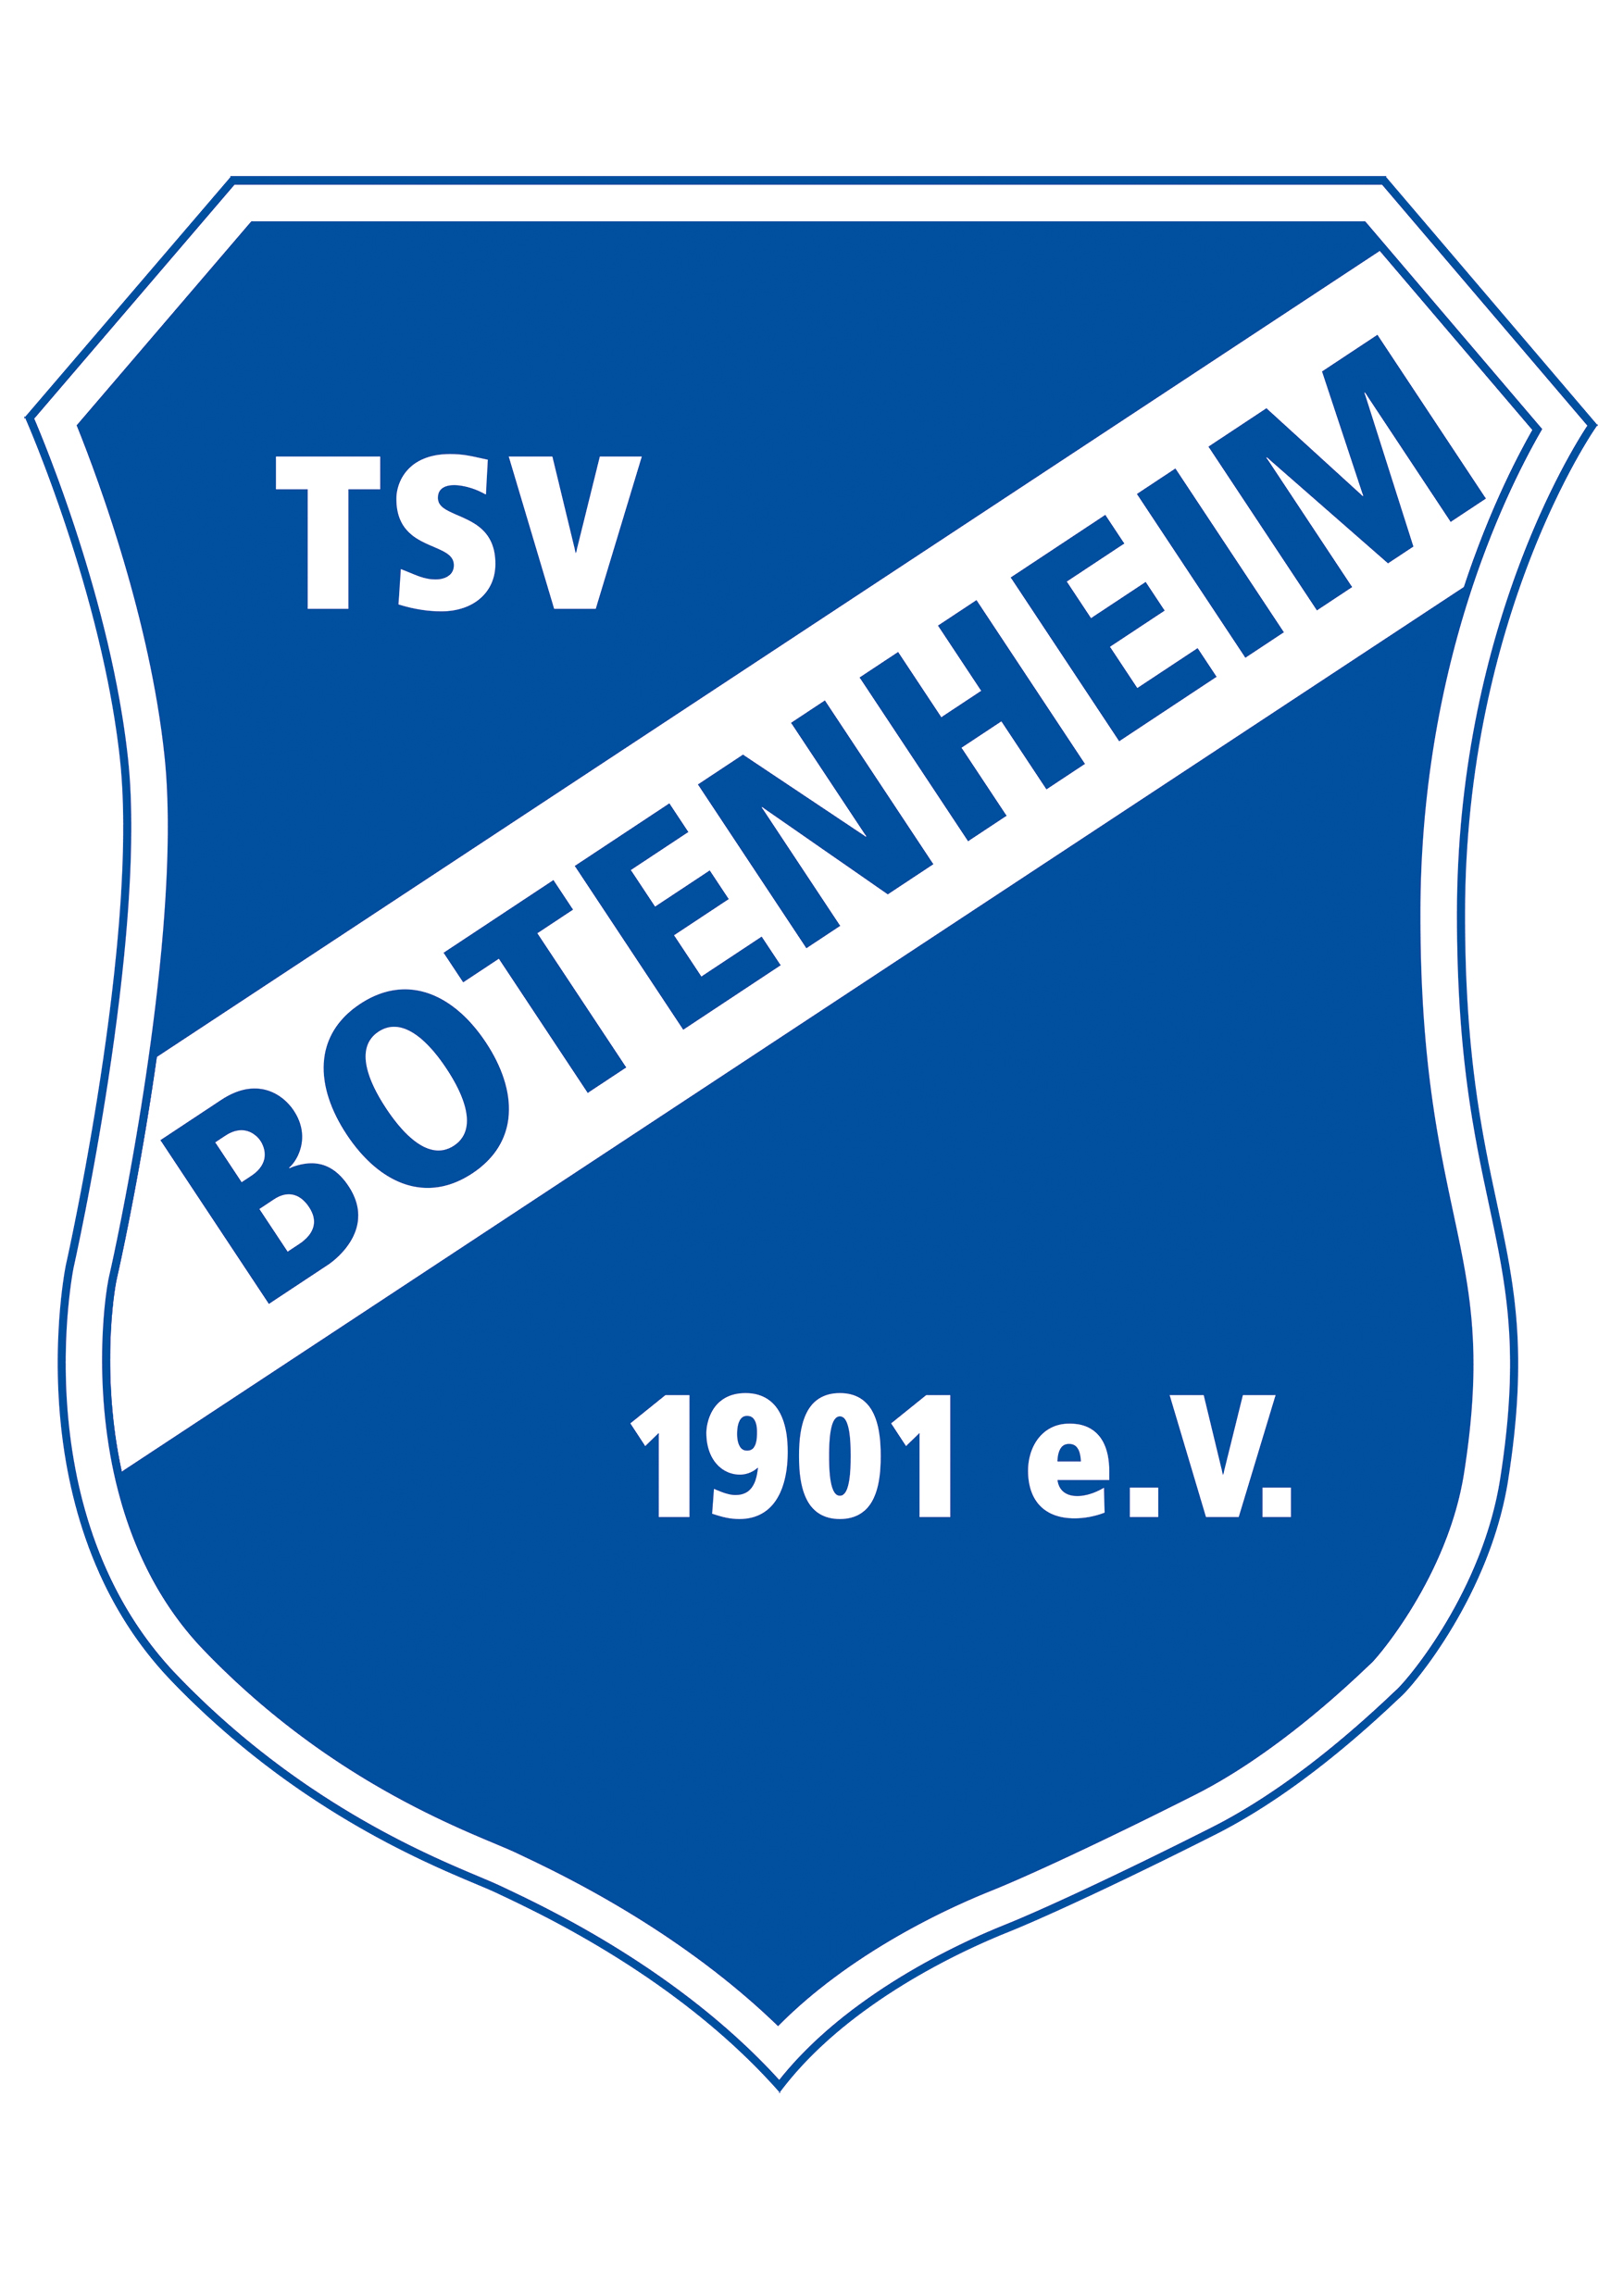 TSV Botenheim Logo